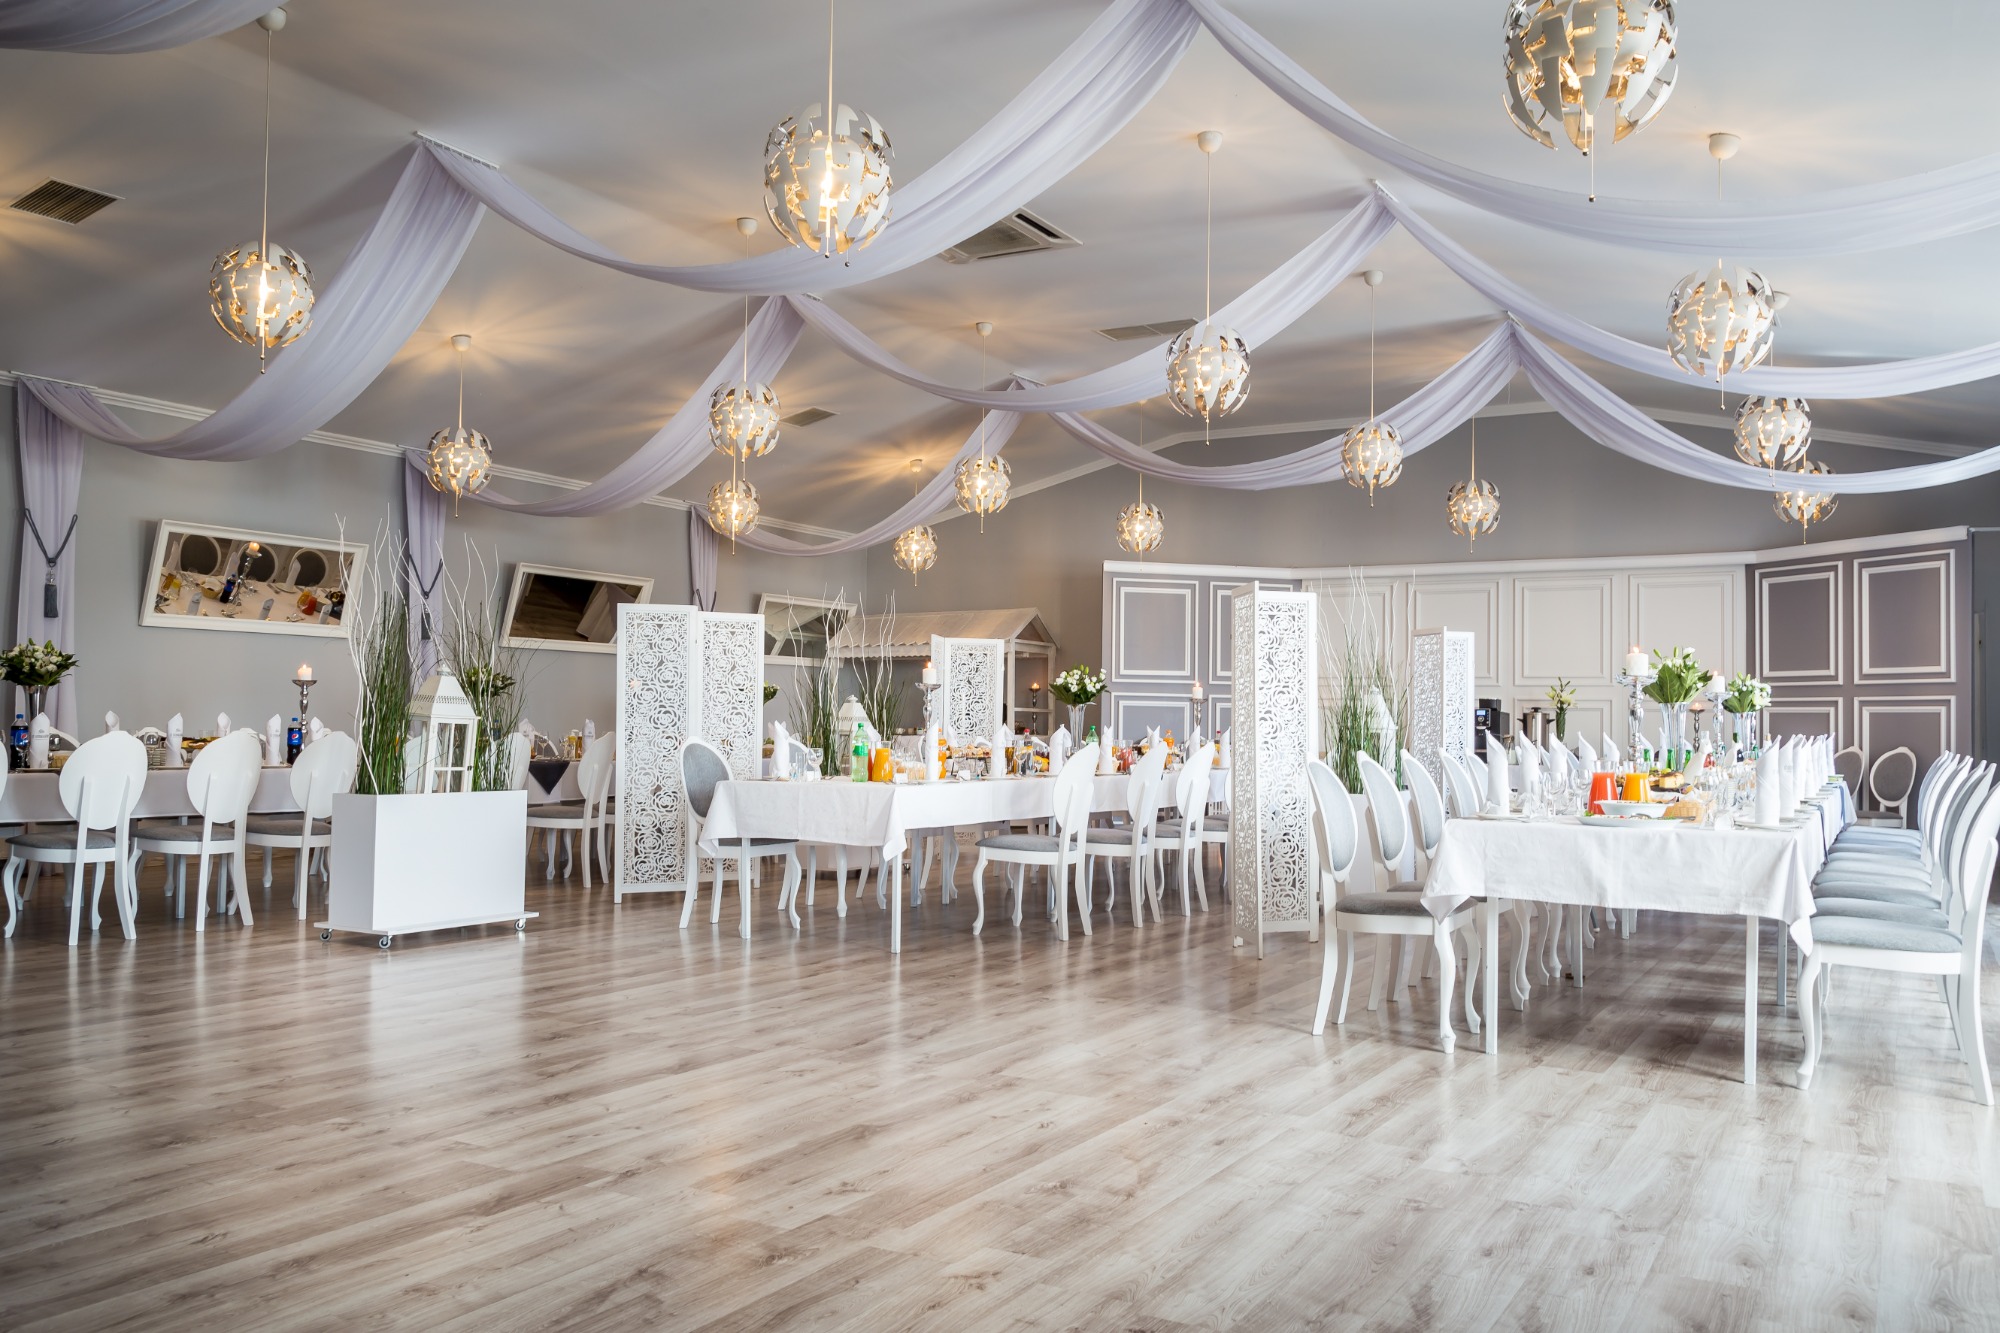 Przestronna sala weselna w Michałowicach umożliwia zaproszenie pokaźnej liczby gości.